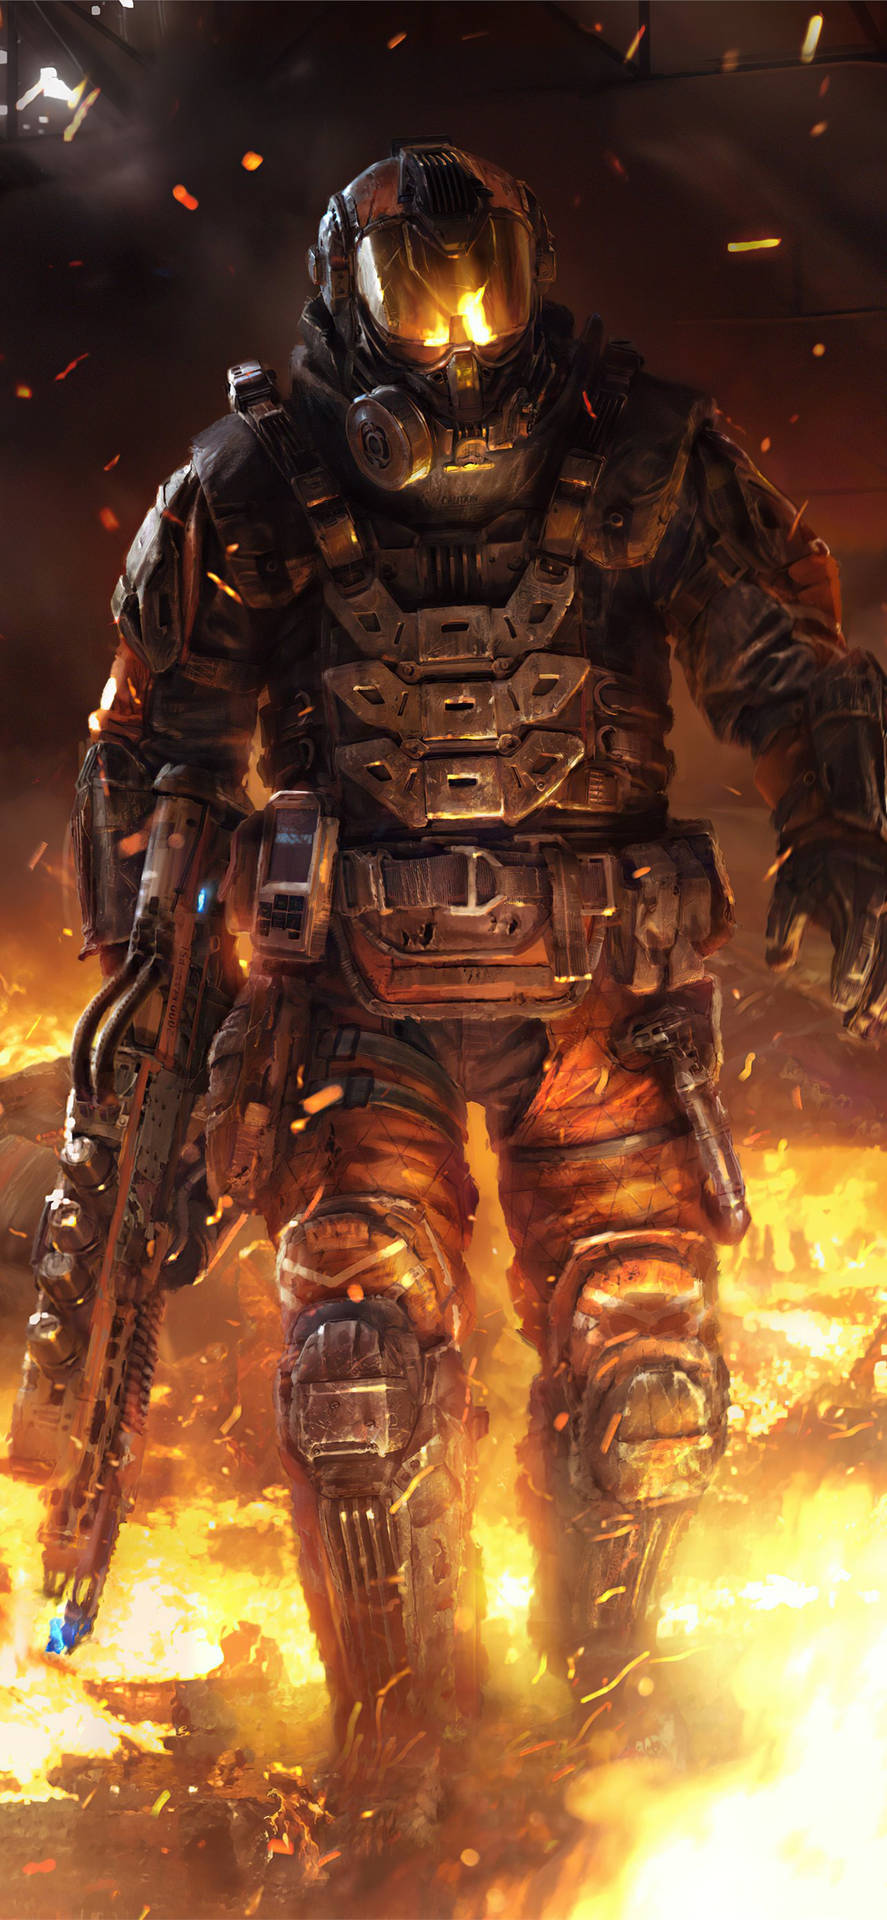 Slåtill Hårt I Sofistikerade Skjutmatcher Med Call Of Duty: Black Ops 3! Wallpaper